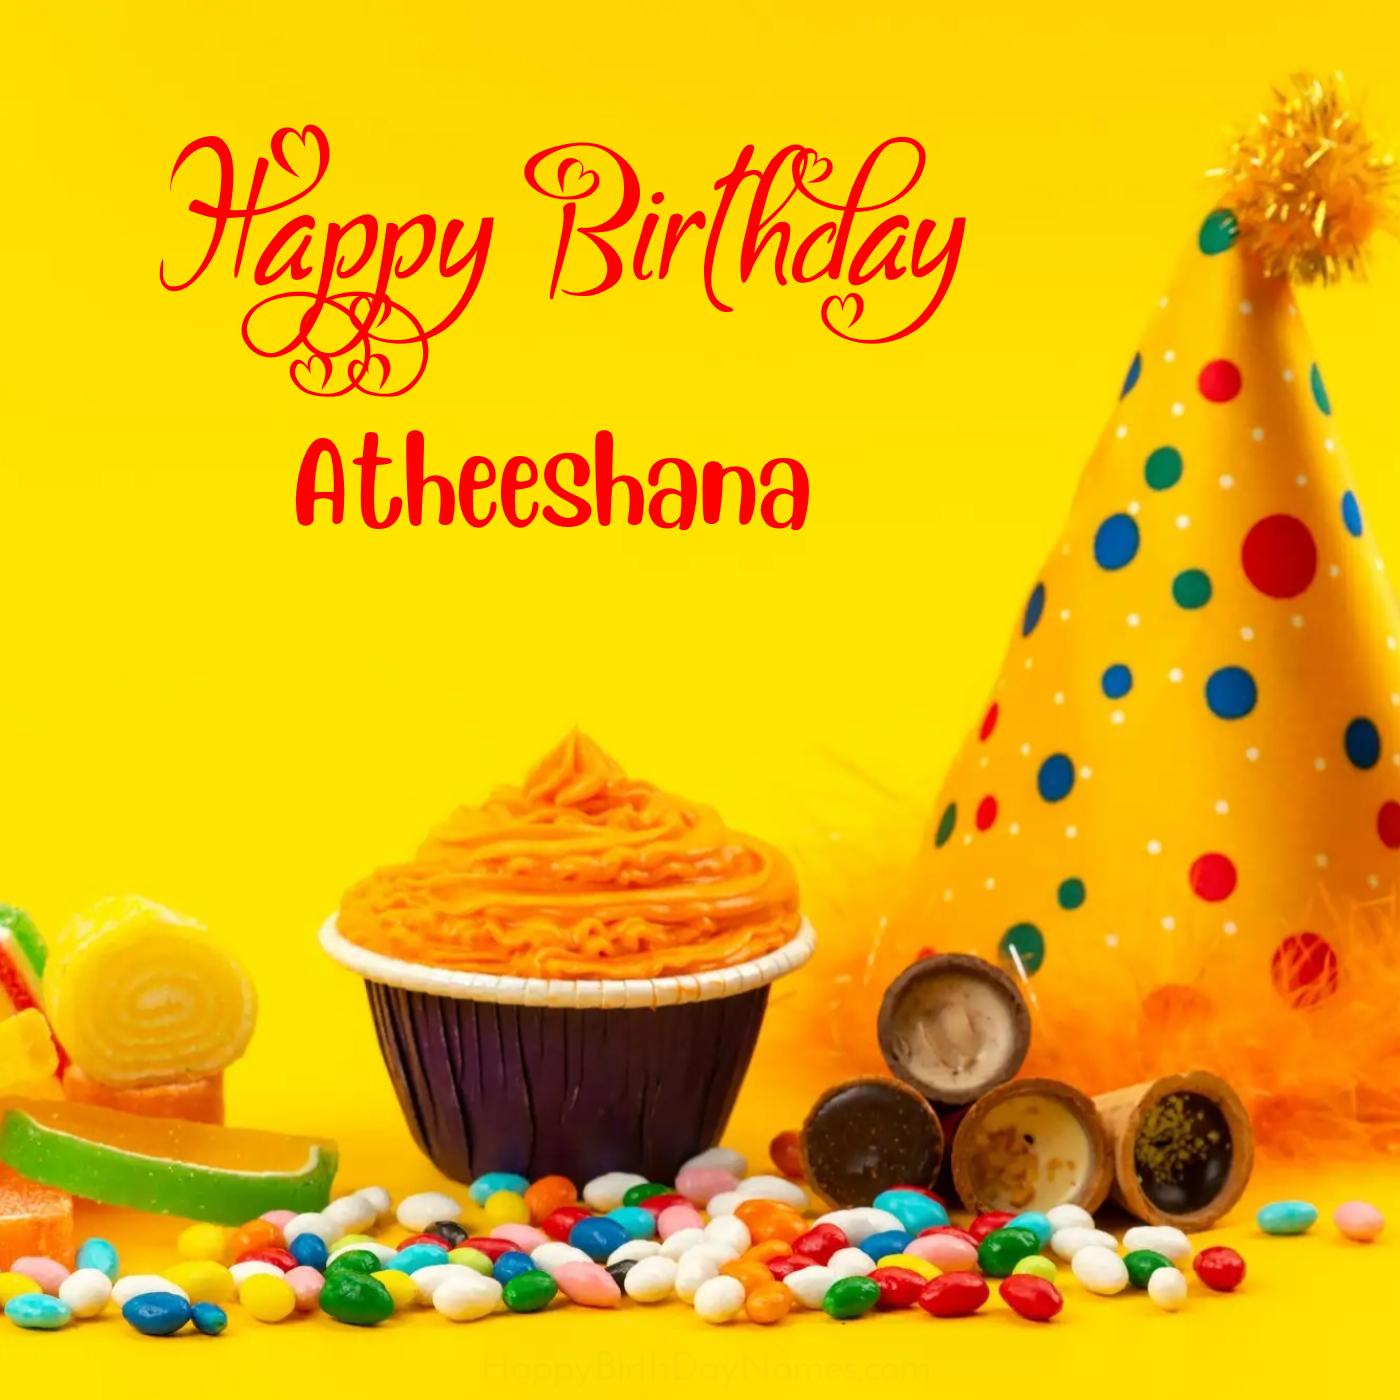 Happy Birthday Atheeshana Colourful Celebration Card